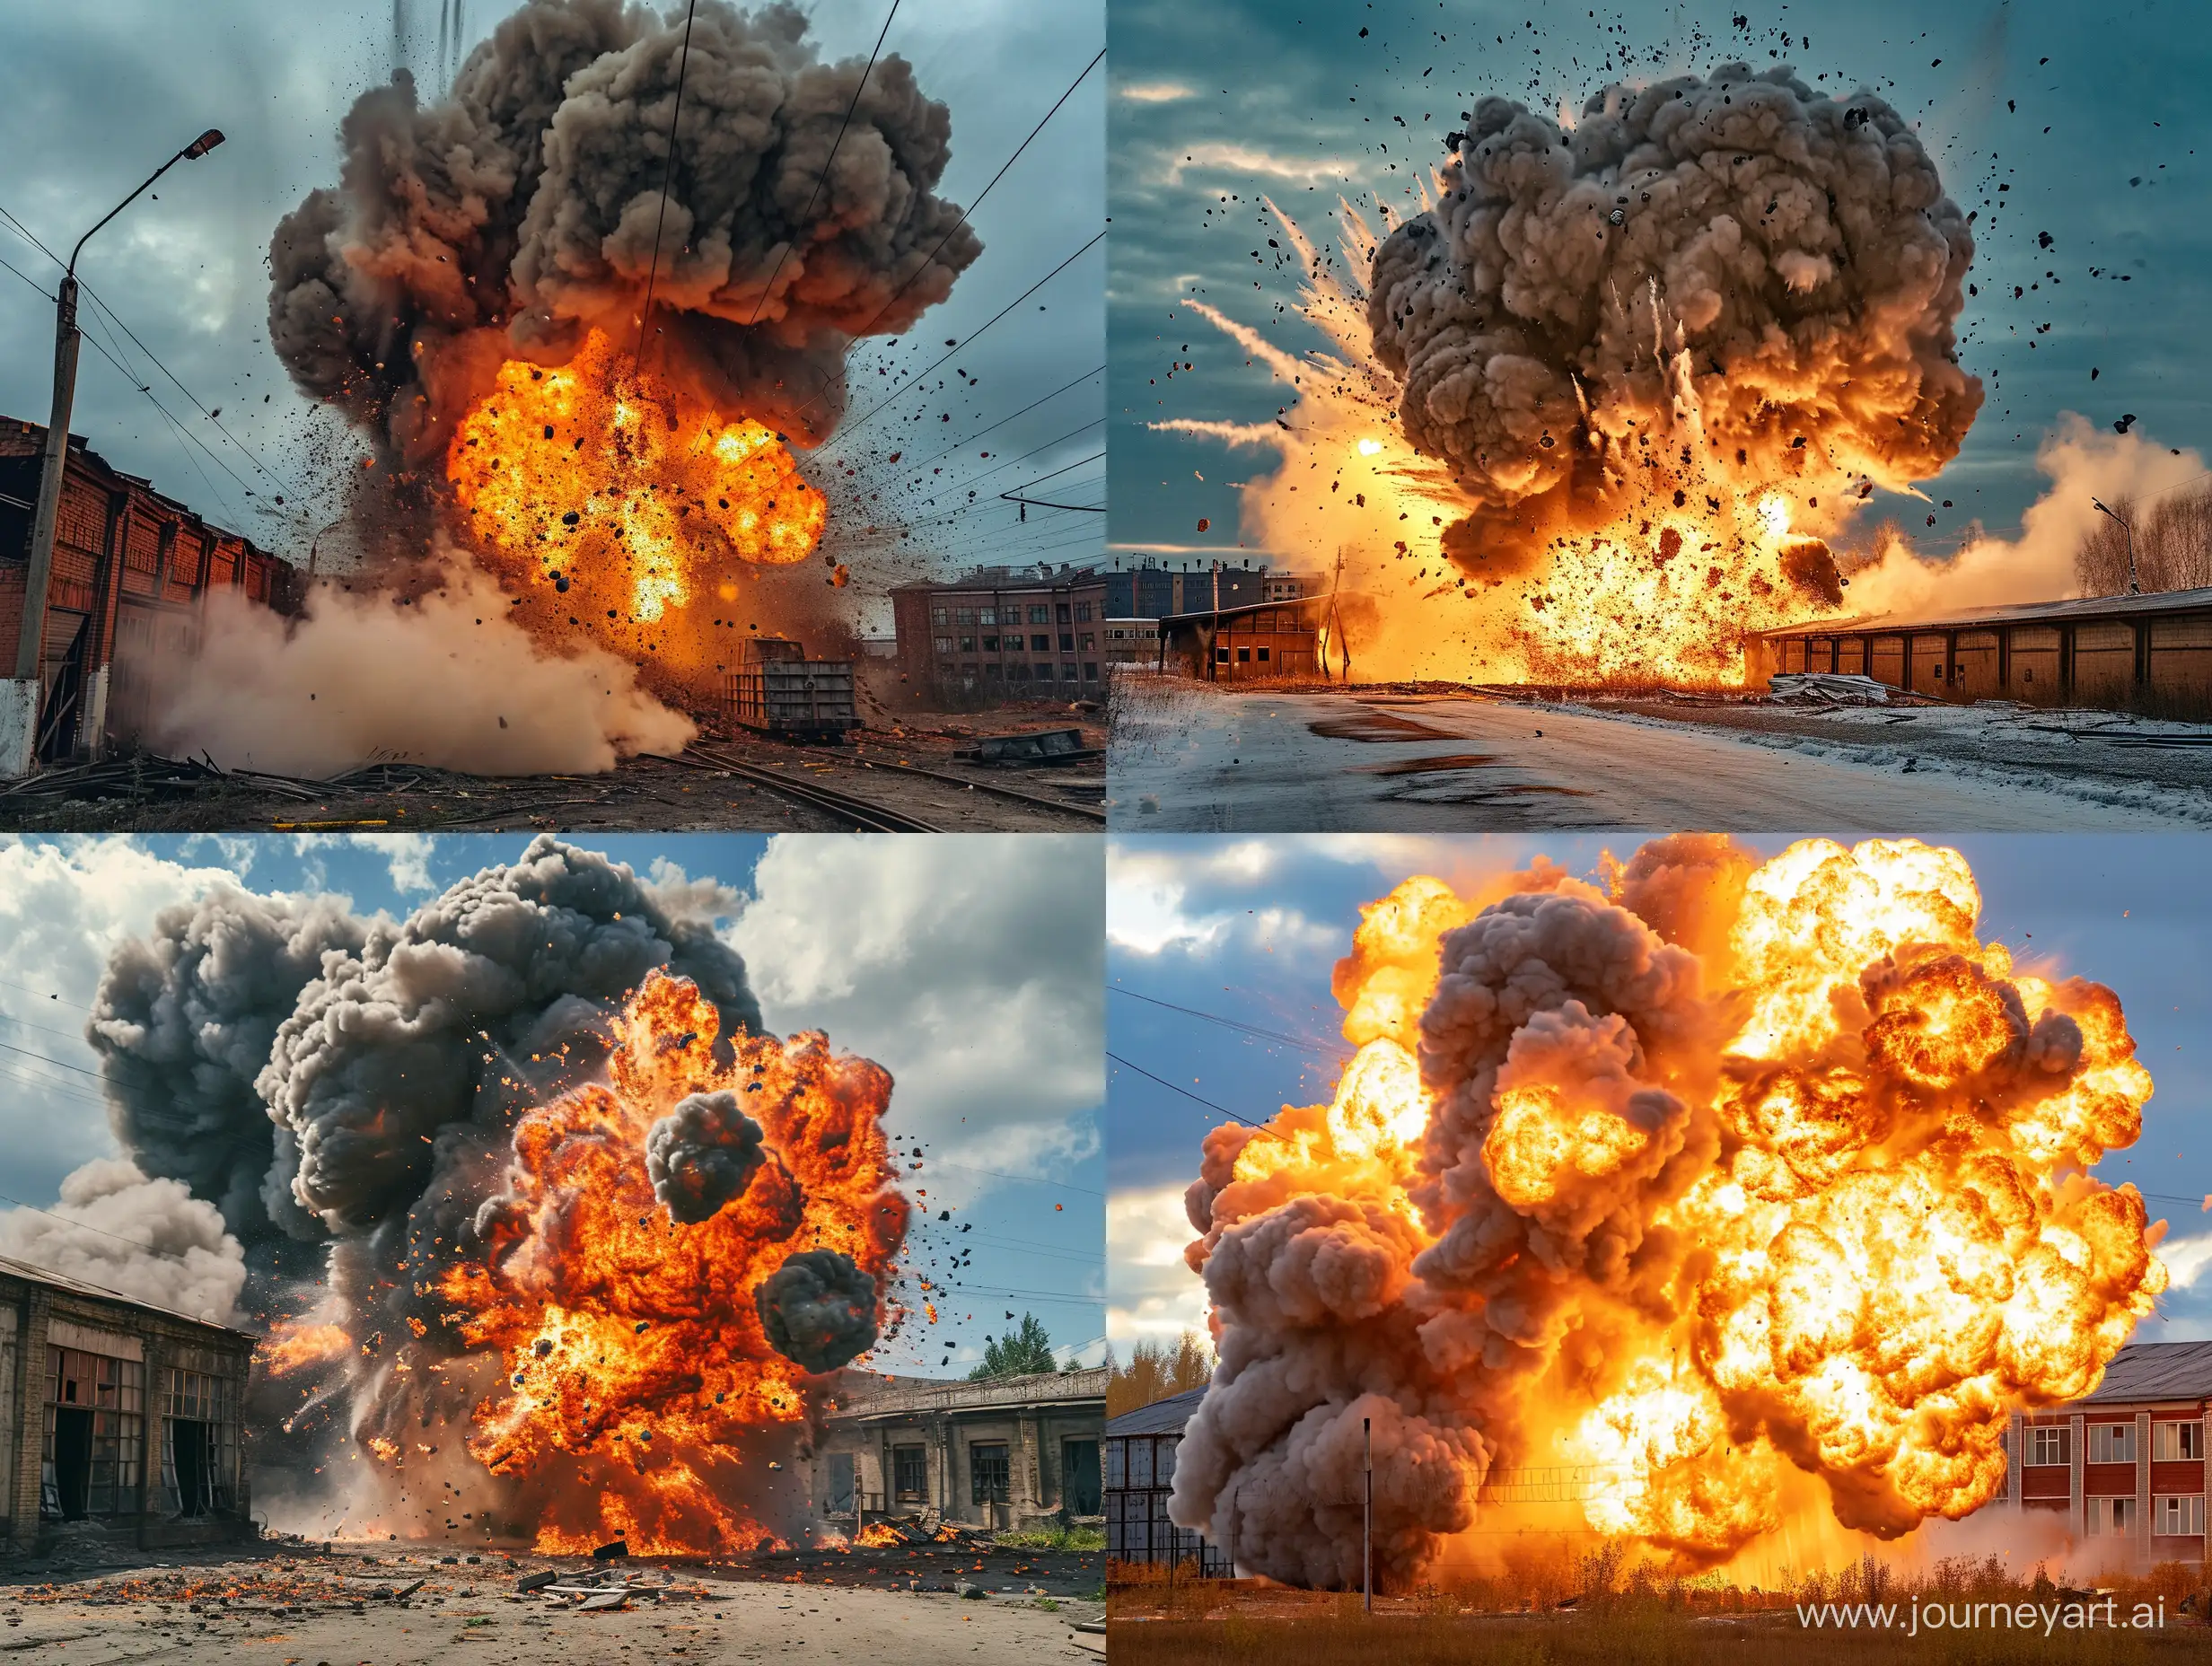 взрыв и огонь в результате падения авиабомбы на нежилой склад на окраине российского города, фотография  сделана на мобильный телефон, реализм, детали, дым